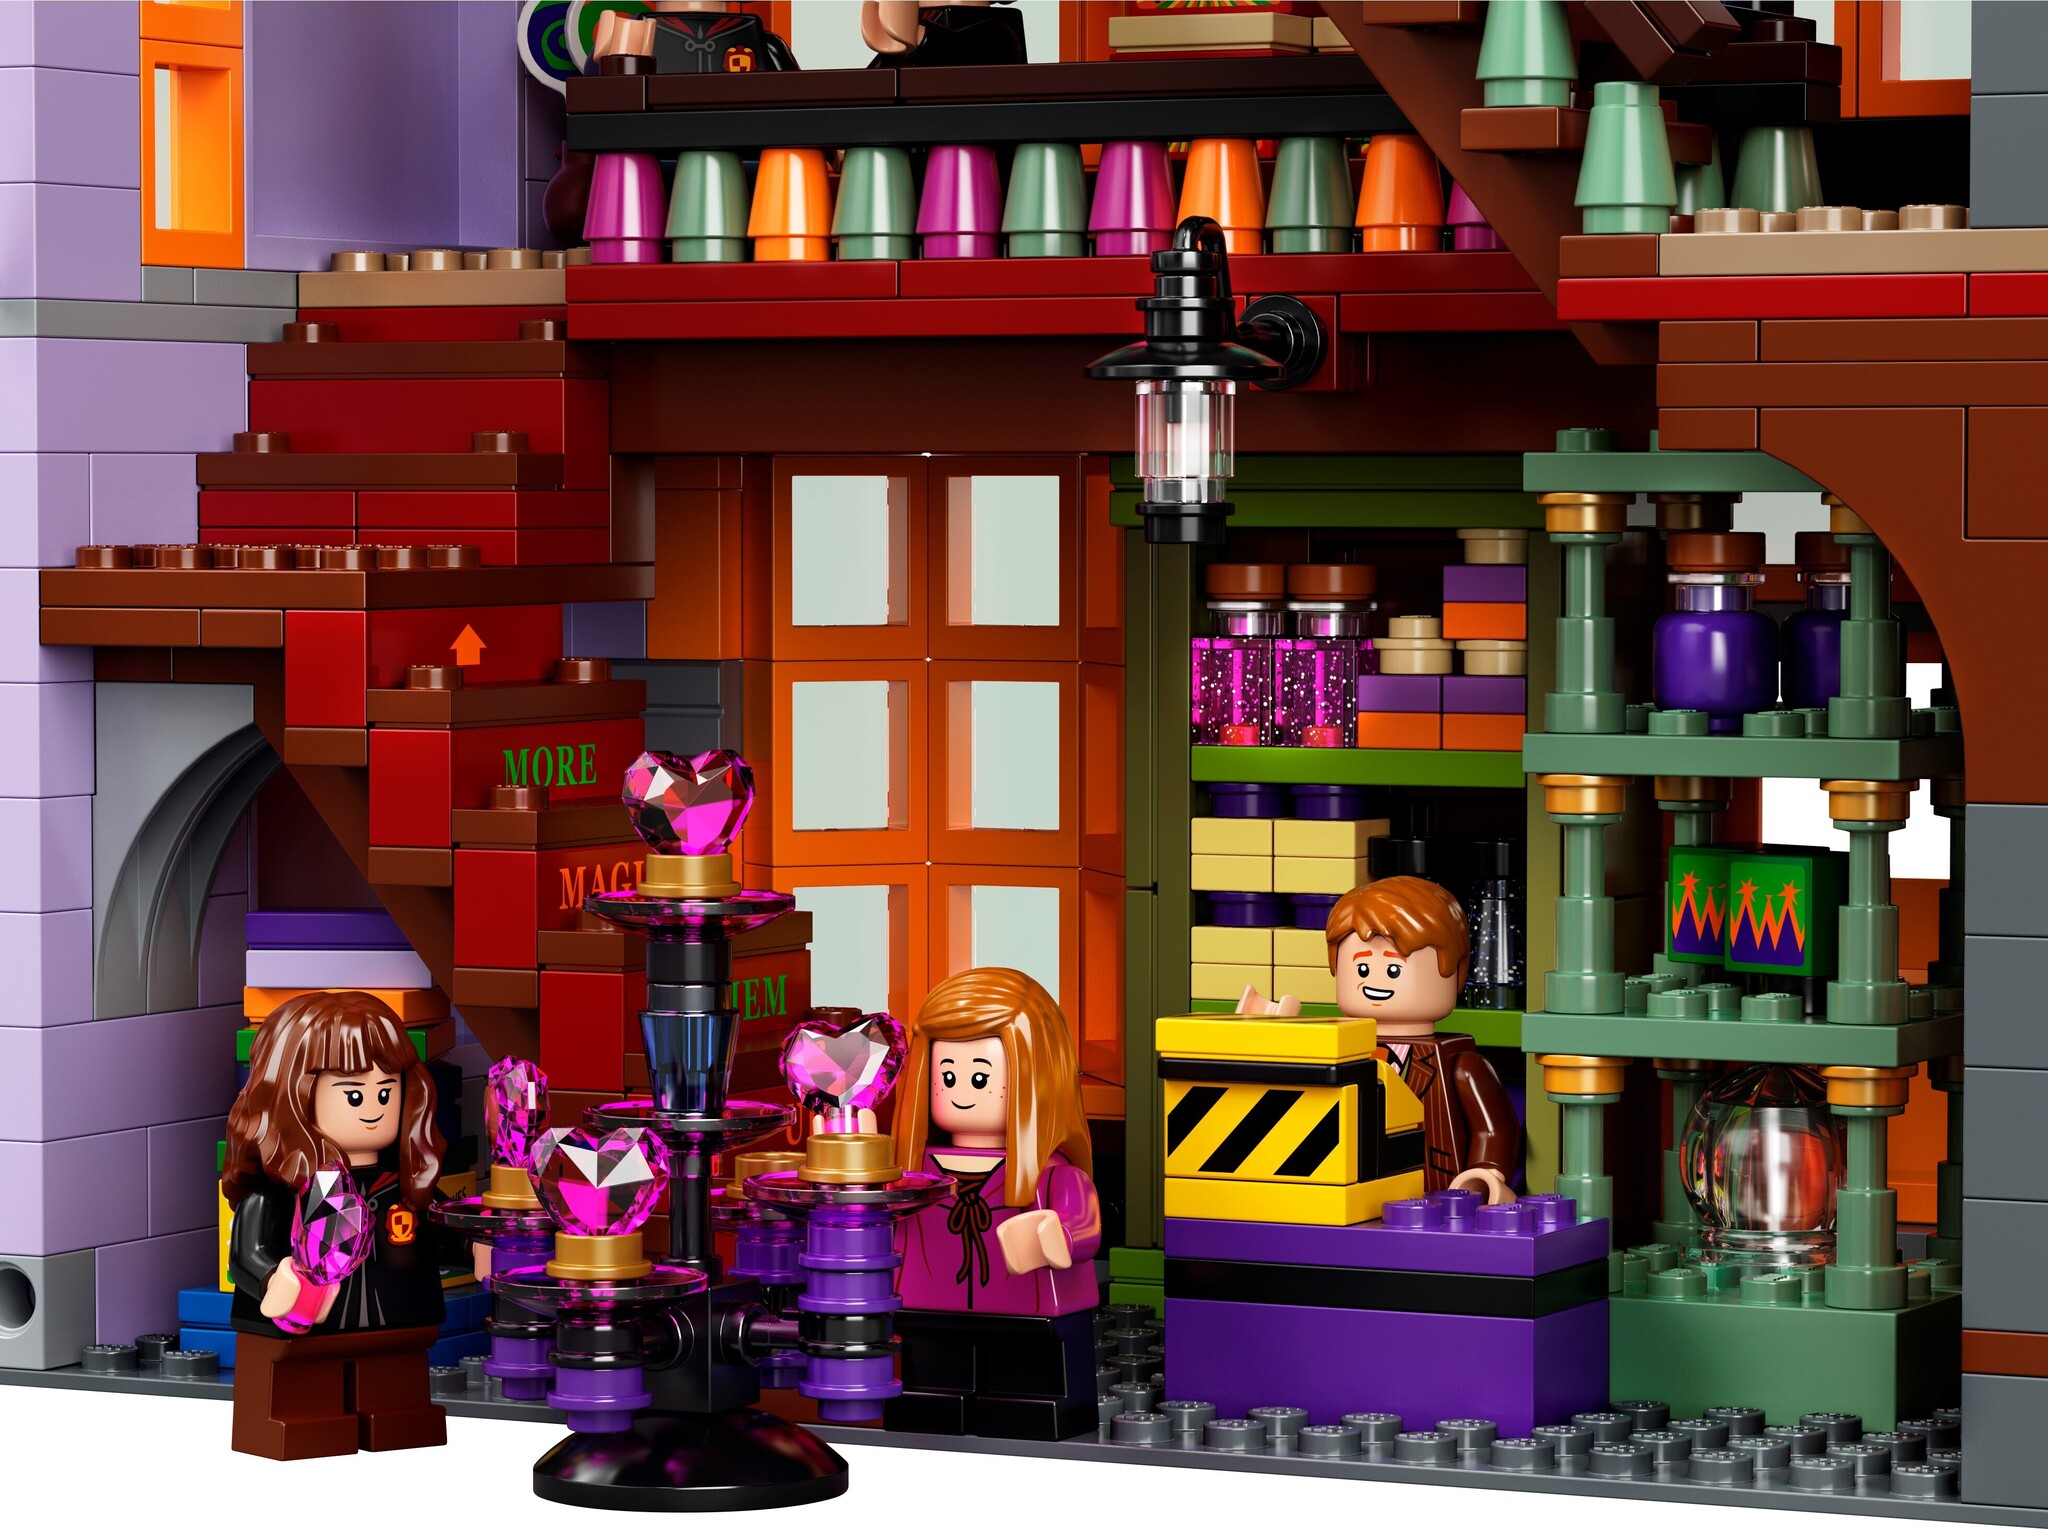 Acheter en ligne LEGO Harry Potter Le Chemin de Traverse (75978, Difficile  à trouver) à bons prix et en toute sécurité 